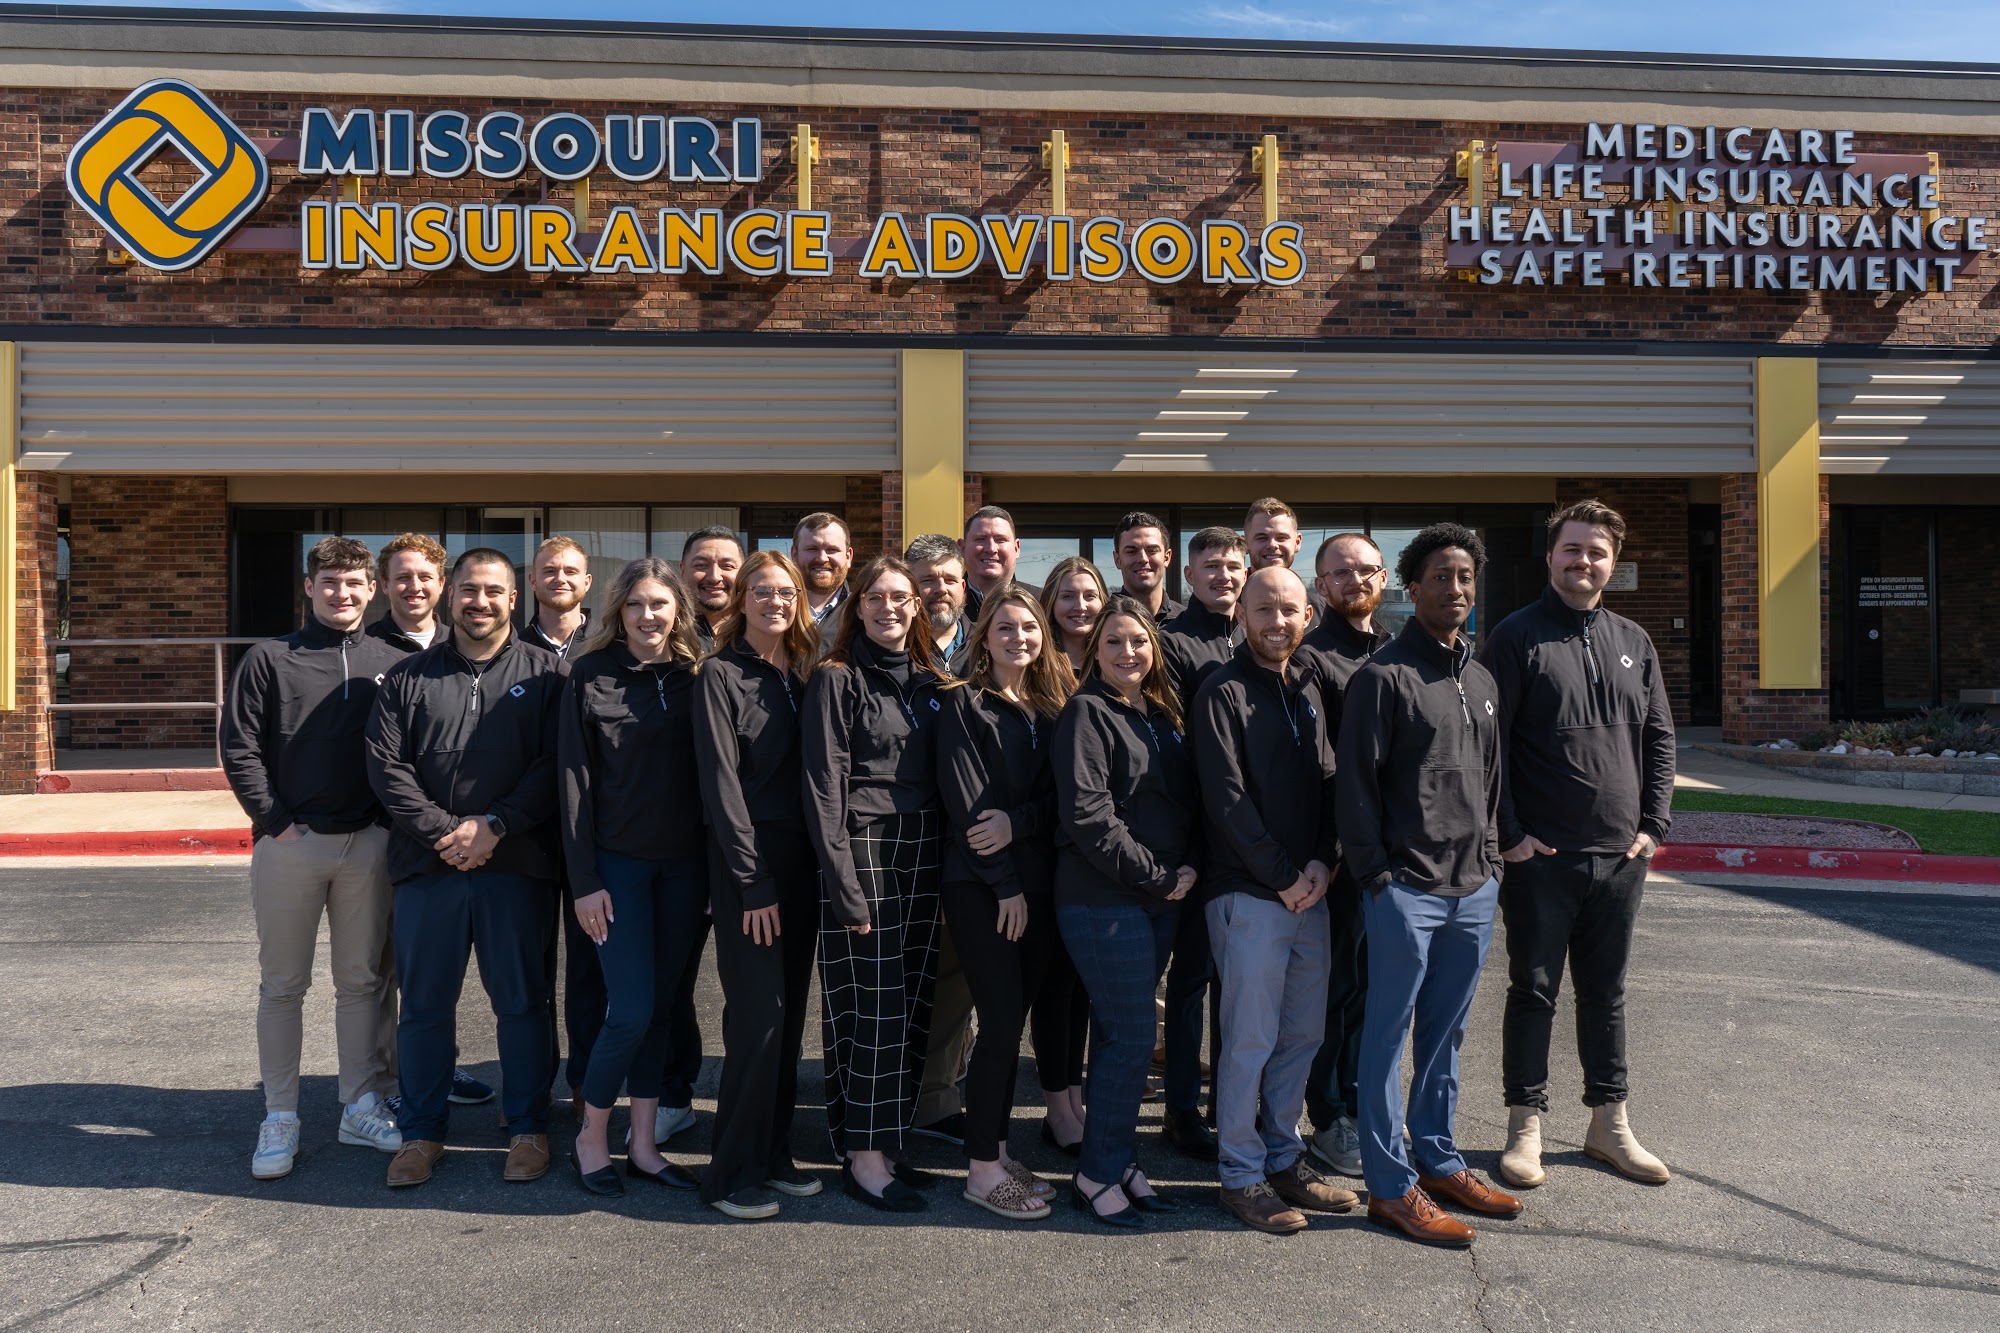 Missouri Insurance Advisors - Medicare & Health Insurance Advisors